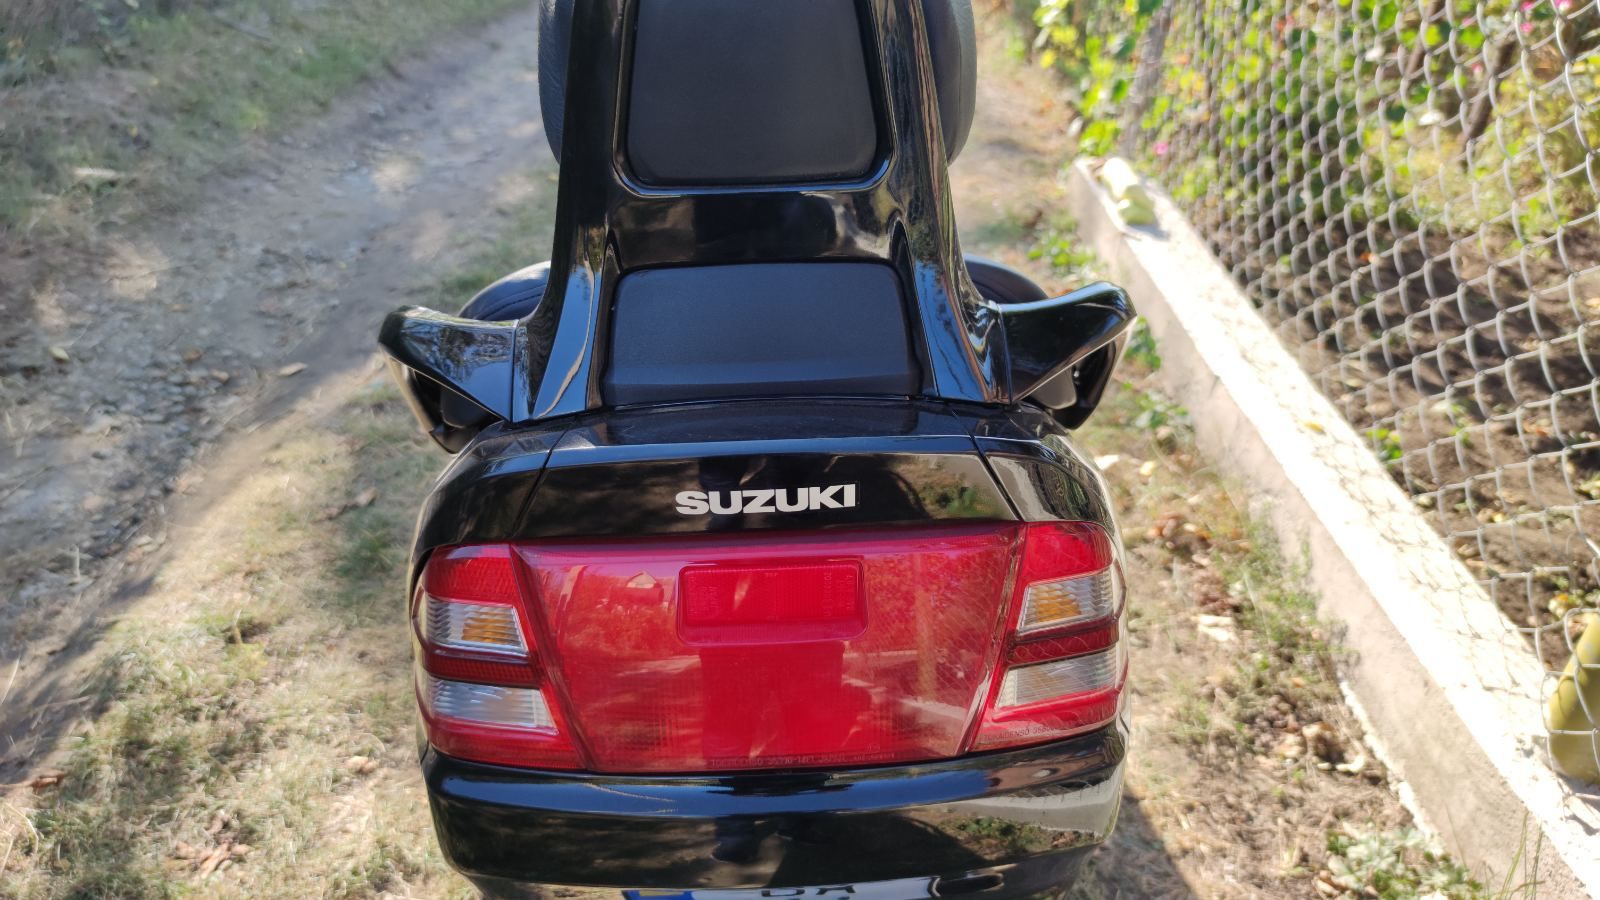 Продам макси скутер Suzuki sky way